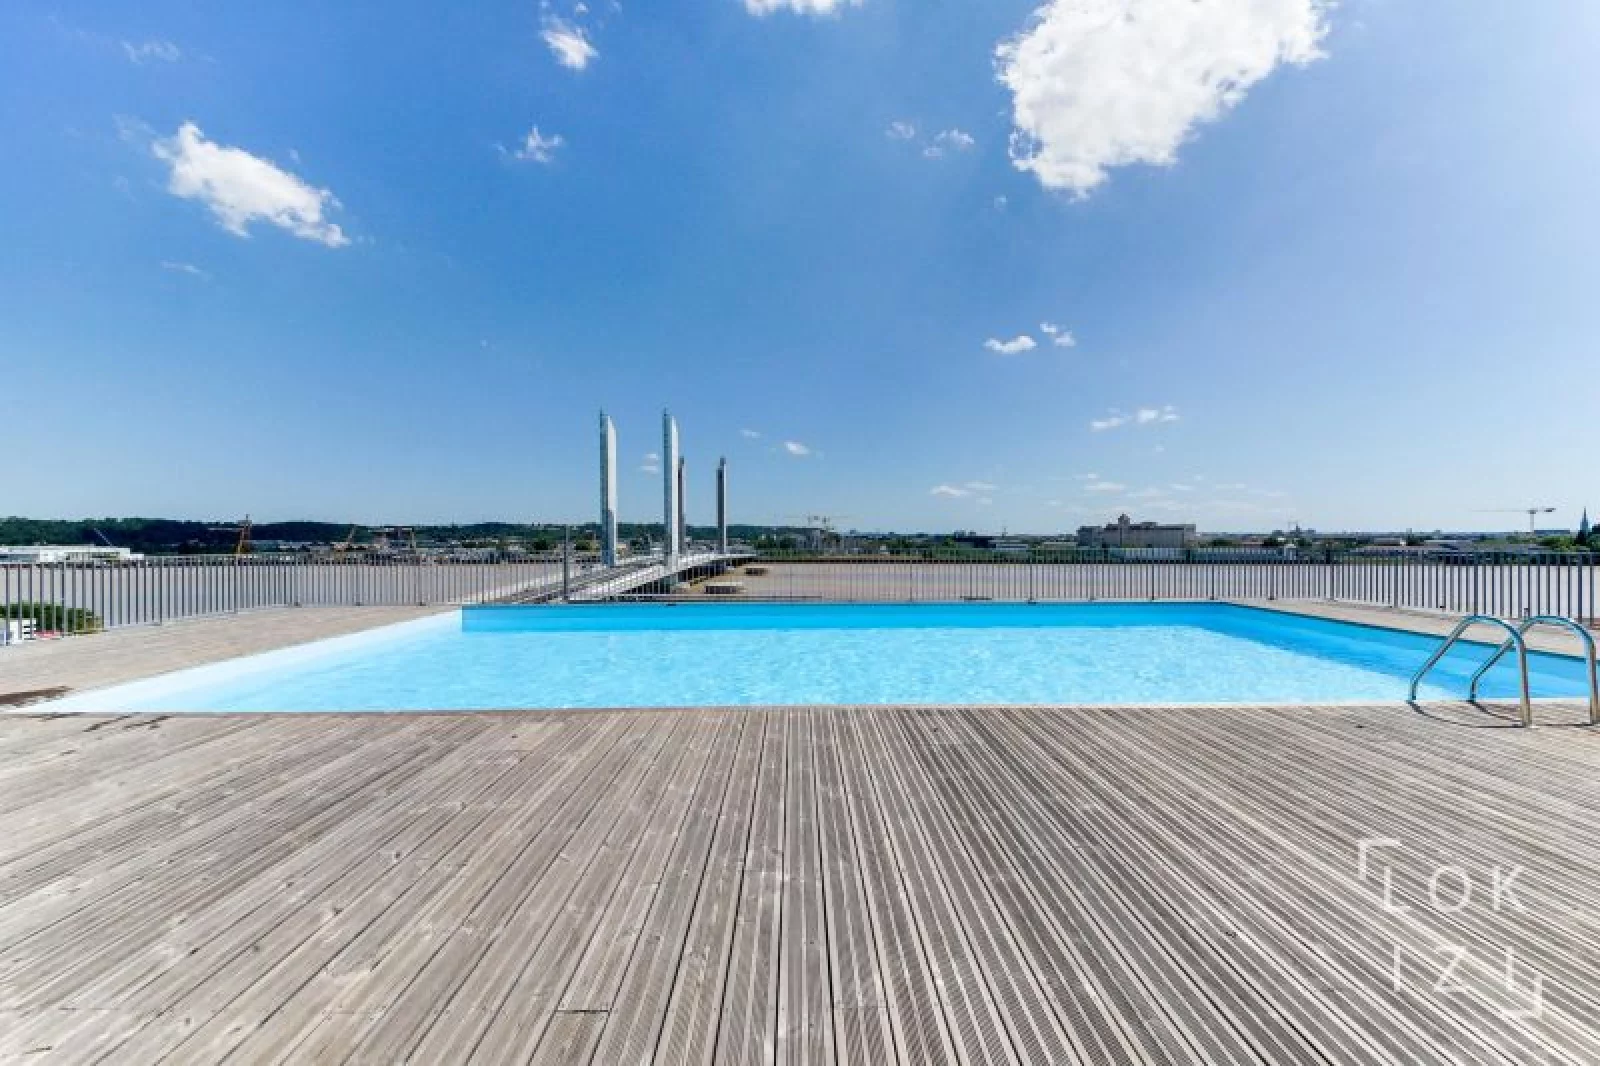 Location appartement meublé 3 pièces 63m² piscine (Bordeaux - Chartrons)